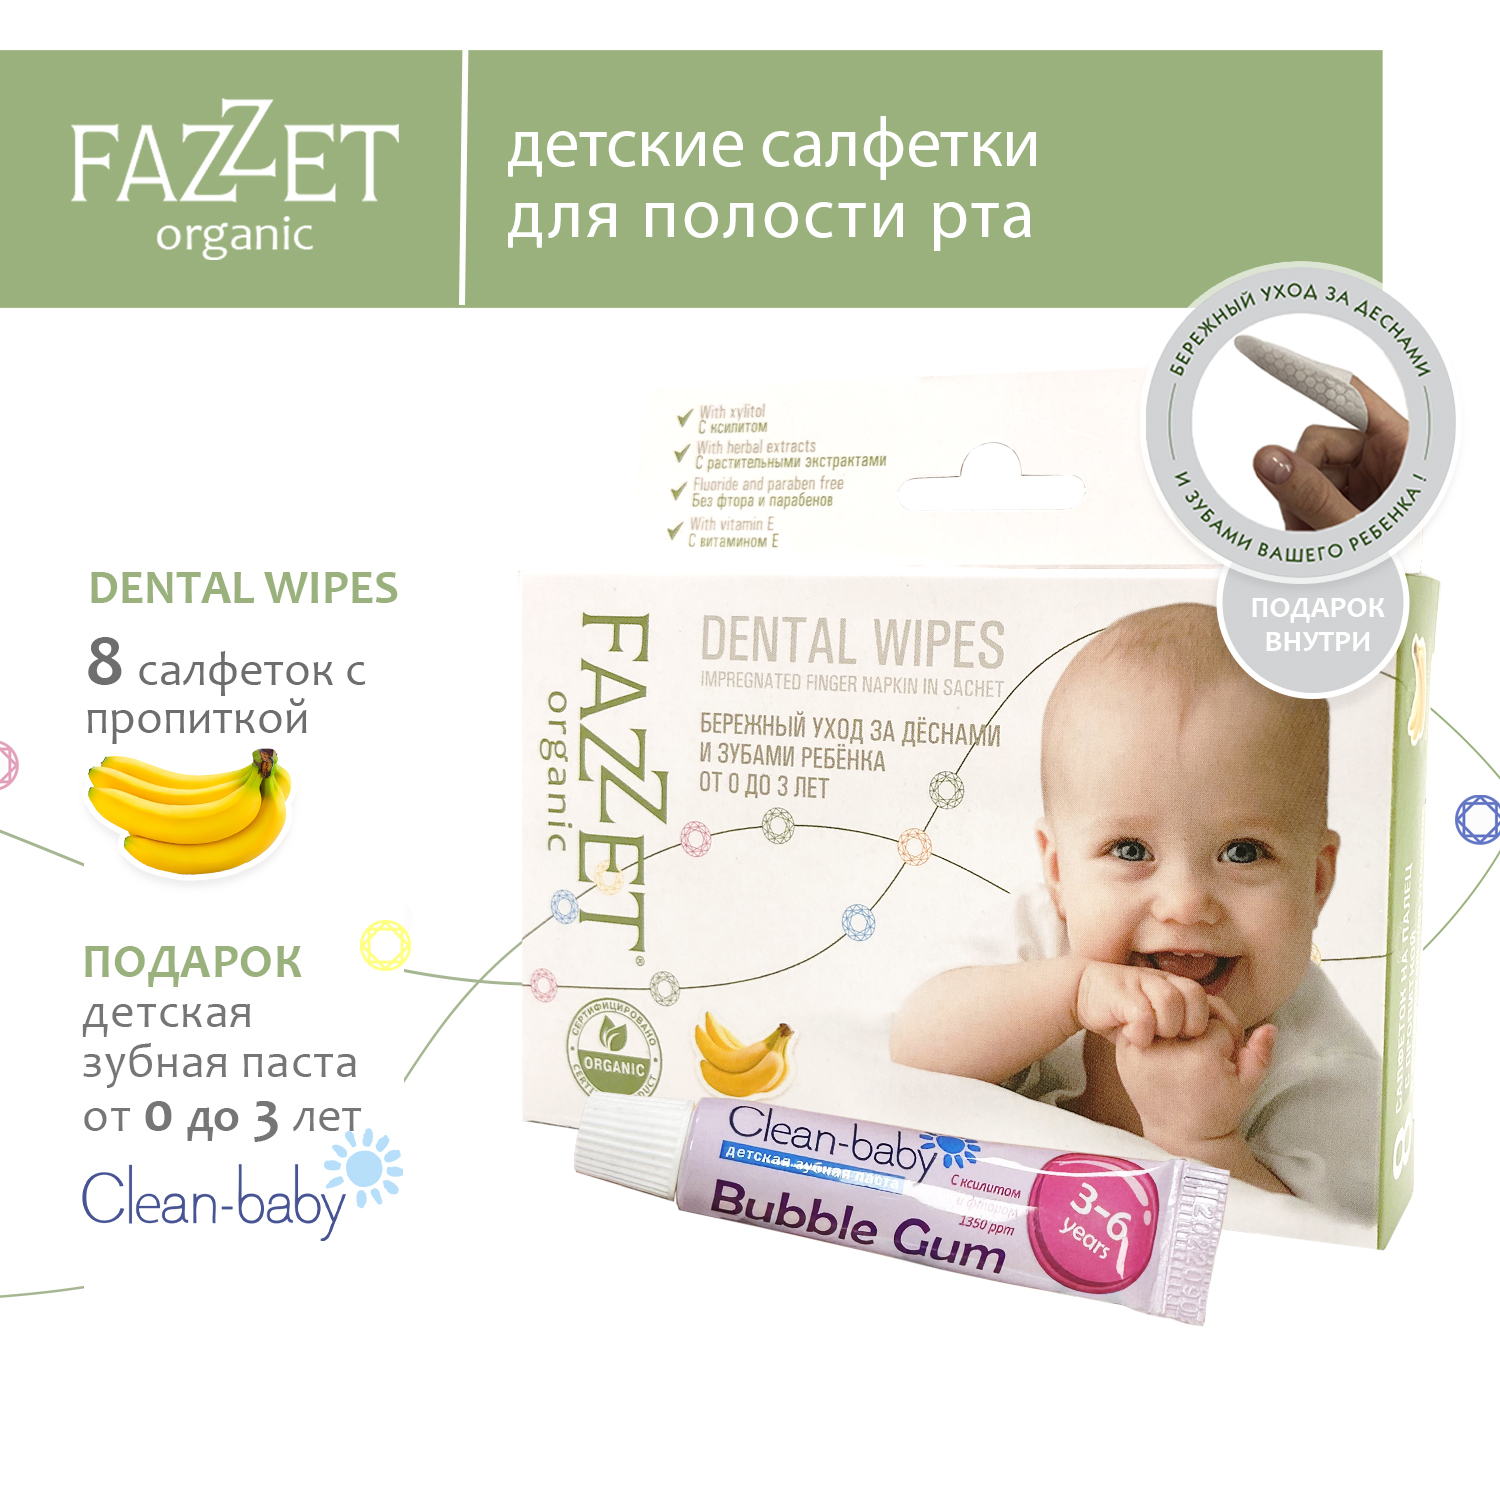 Детские салфетки Fazzet ORGANIC для полости рта 0-3 года 8 шт и подарок зубная паста Clean-baby 3-6 лет 5 мл - фото 2